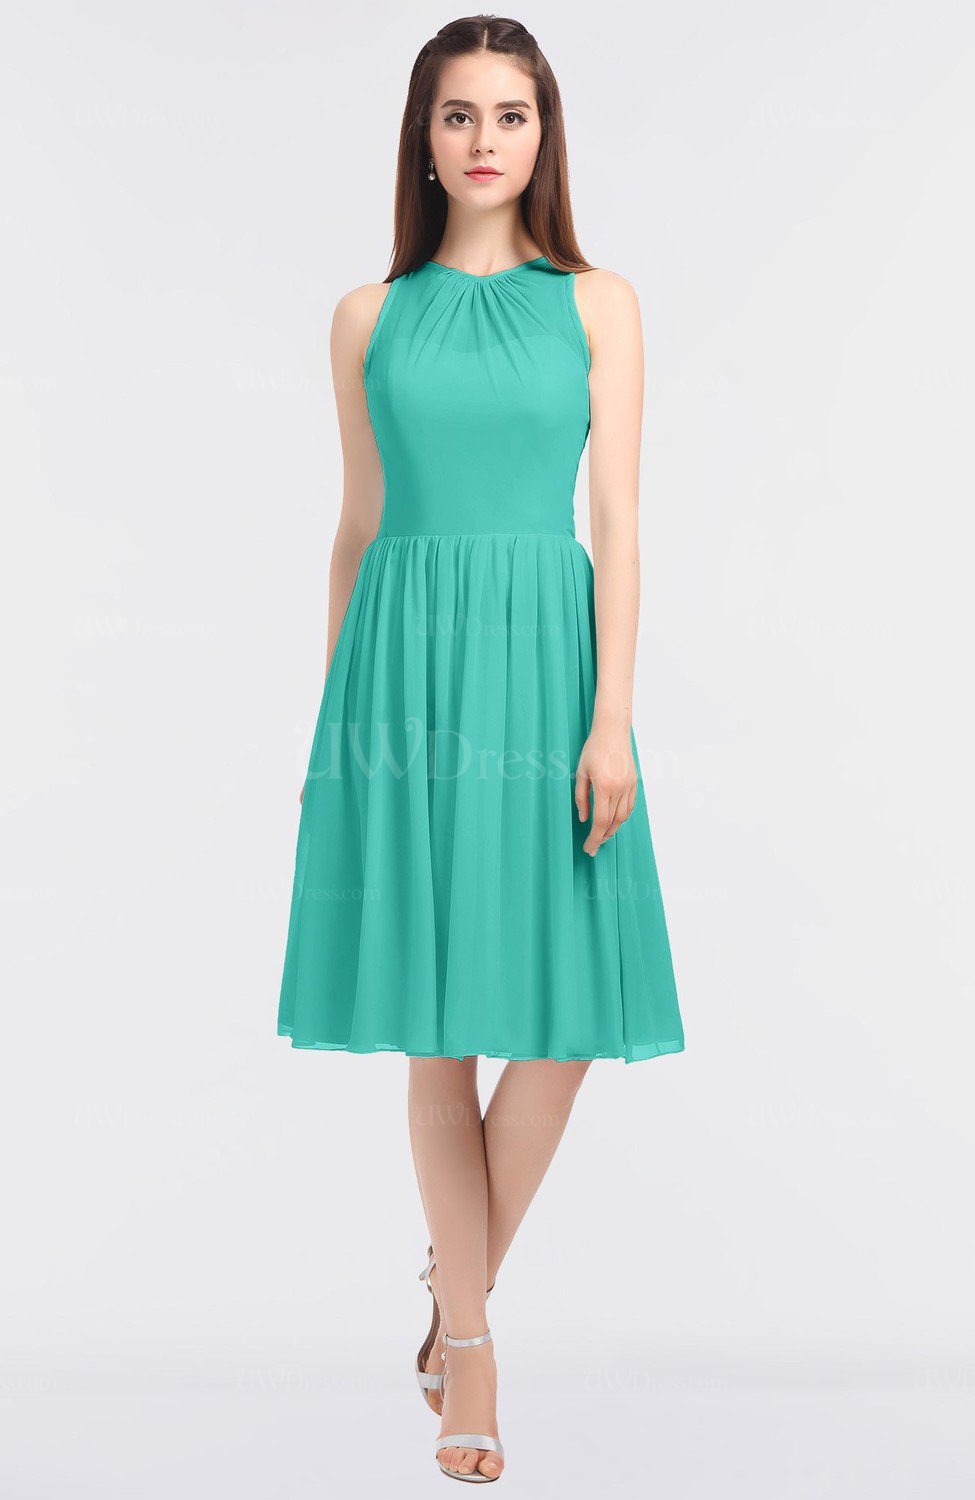 Turquoise G97 Elegant Sleeveless Zip Up Knee Length Plainness